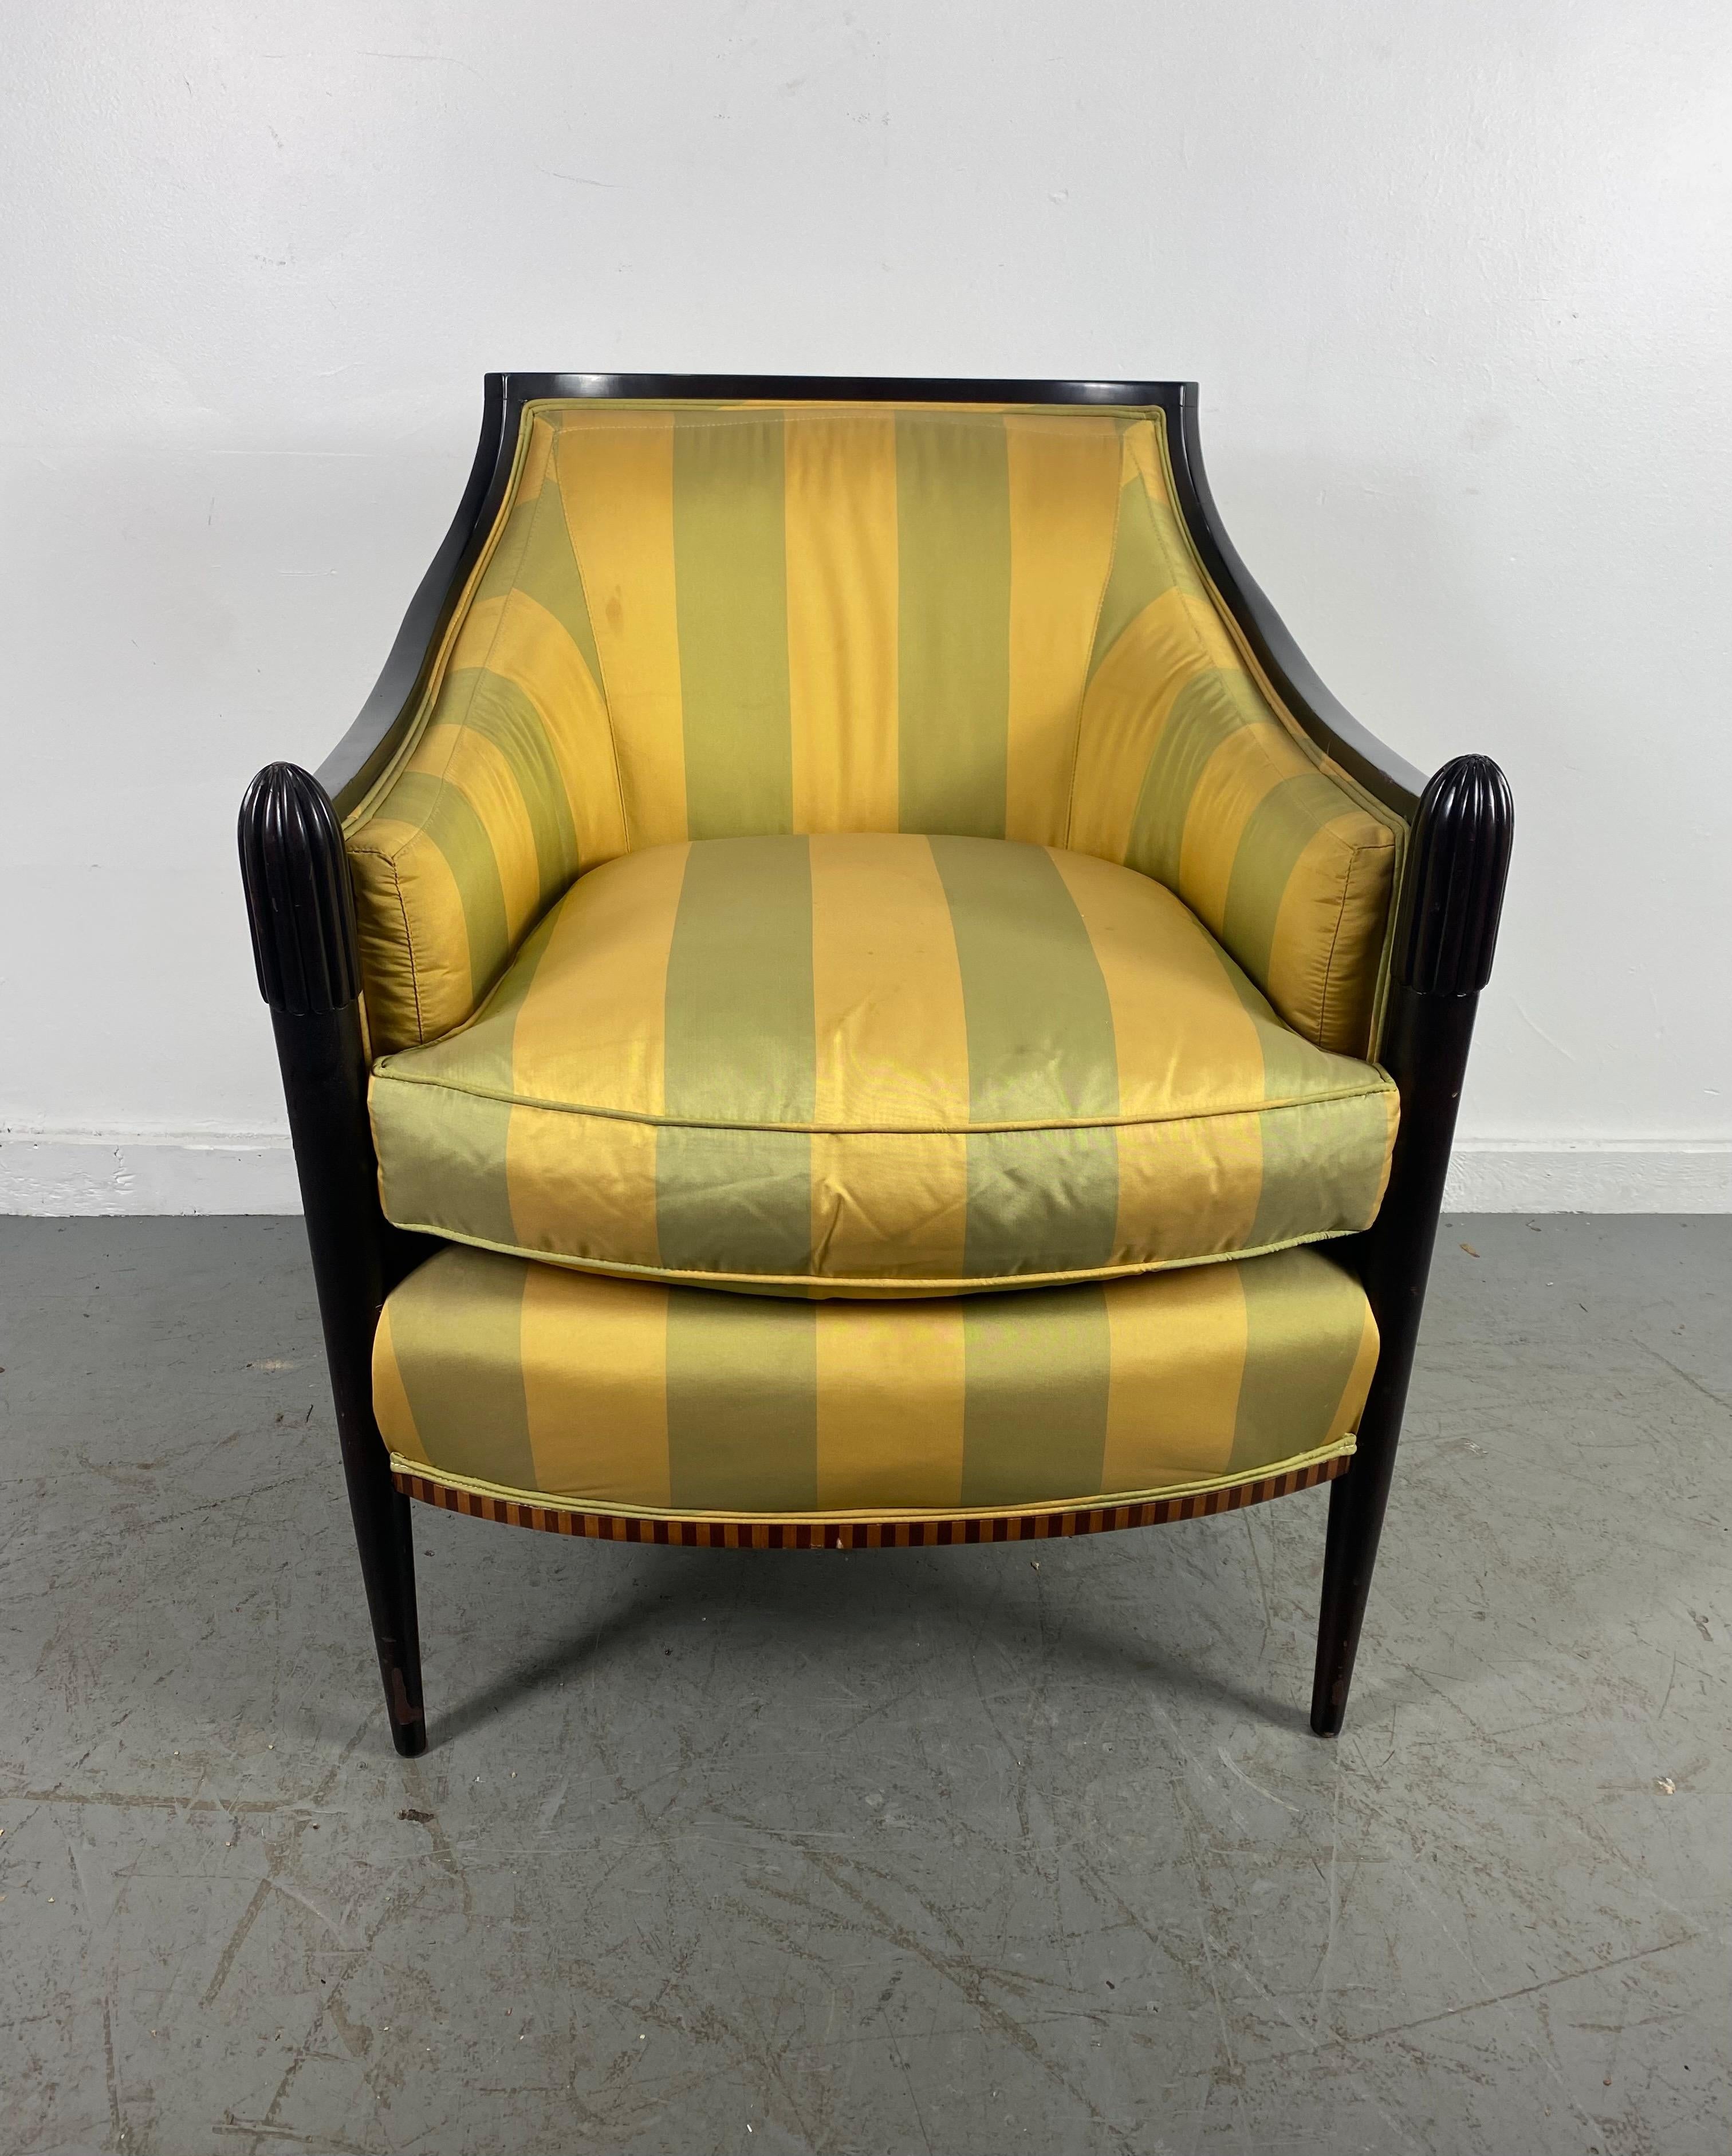 Atemberaubende Art Deco Style Salon Stuhl von Baker Furniture nach Paul Follot,, Große Qualität und Konstruktion,, Erstaunliche Design / Stil,, Extrem bequem,, behält ursprünglichen Seidenmischung gestreift Stoff,, kleinere Furnier Verlust auf